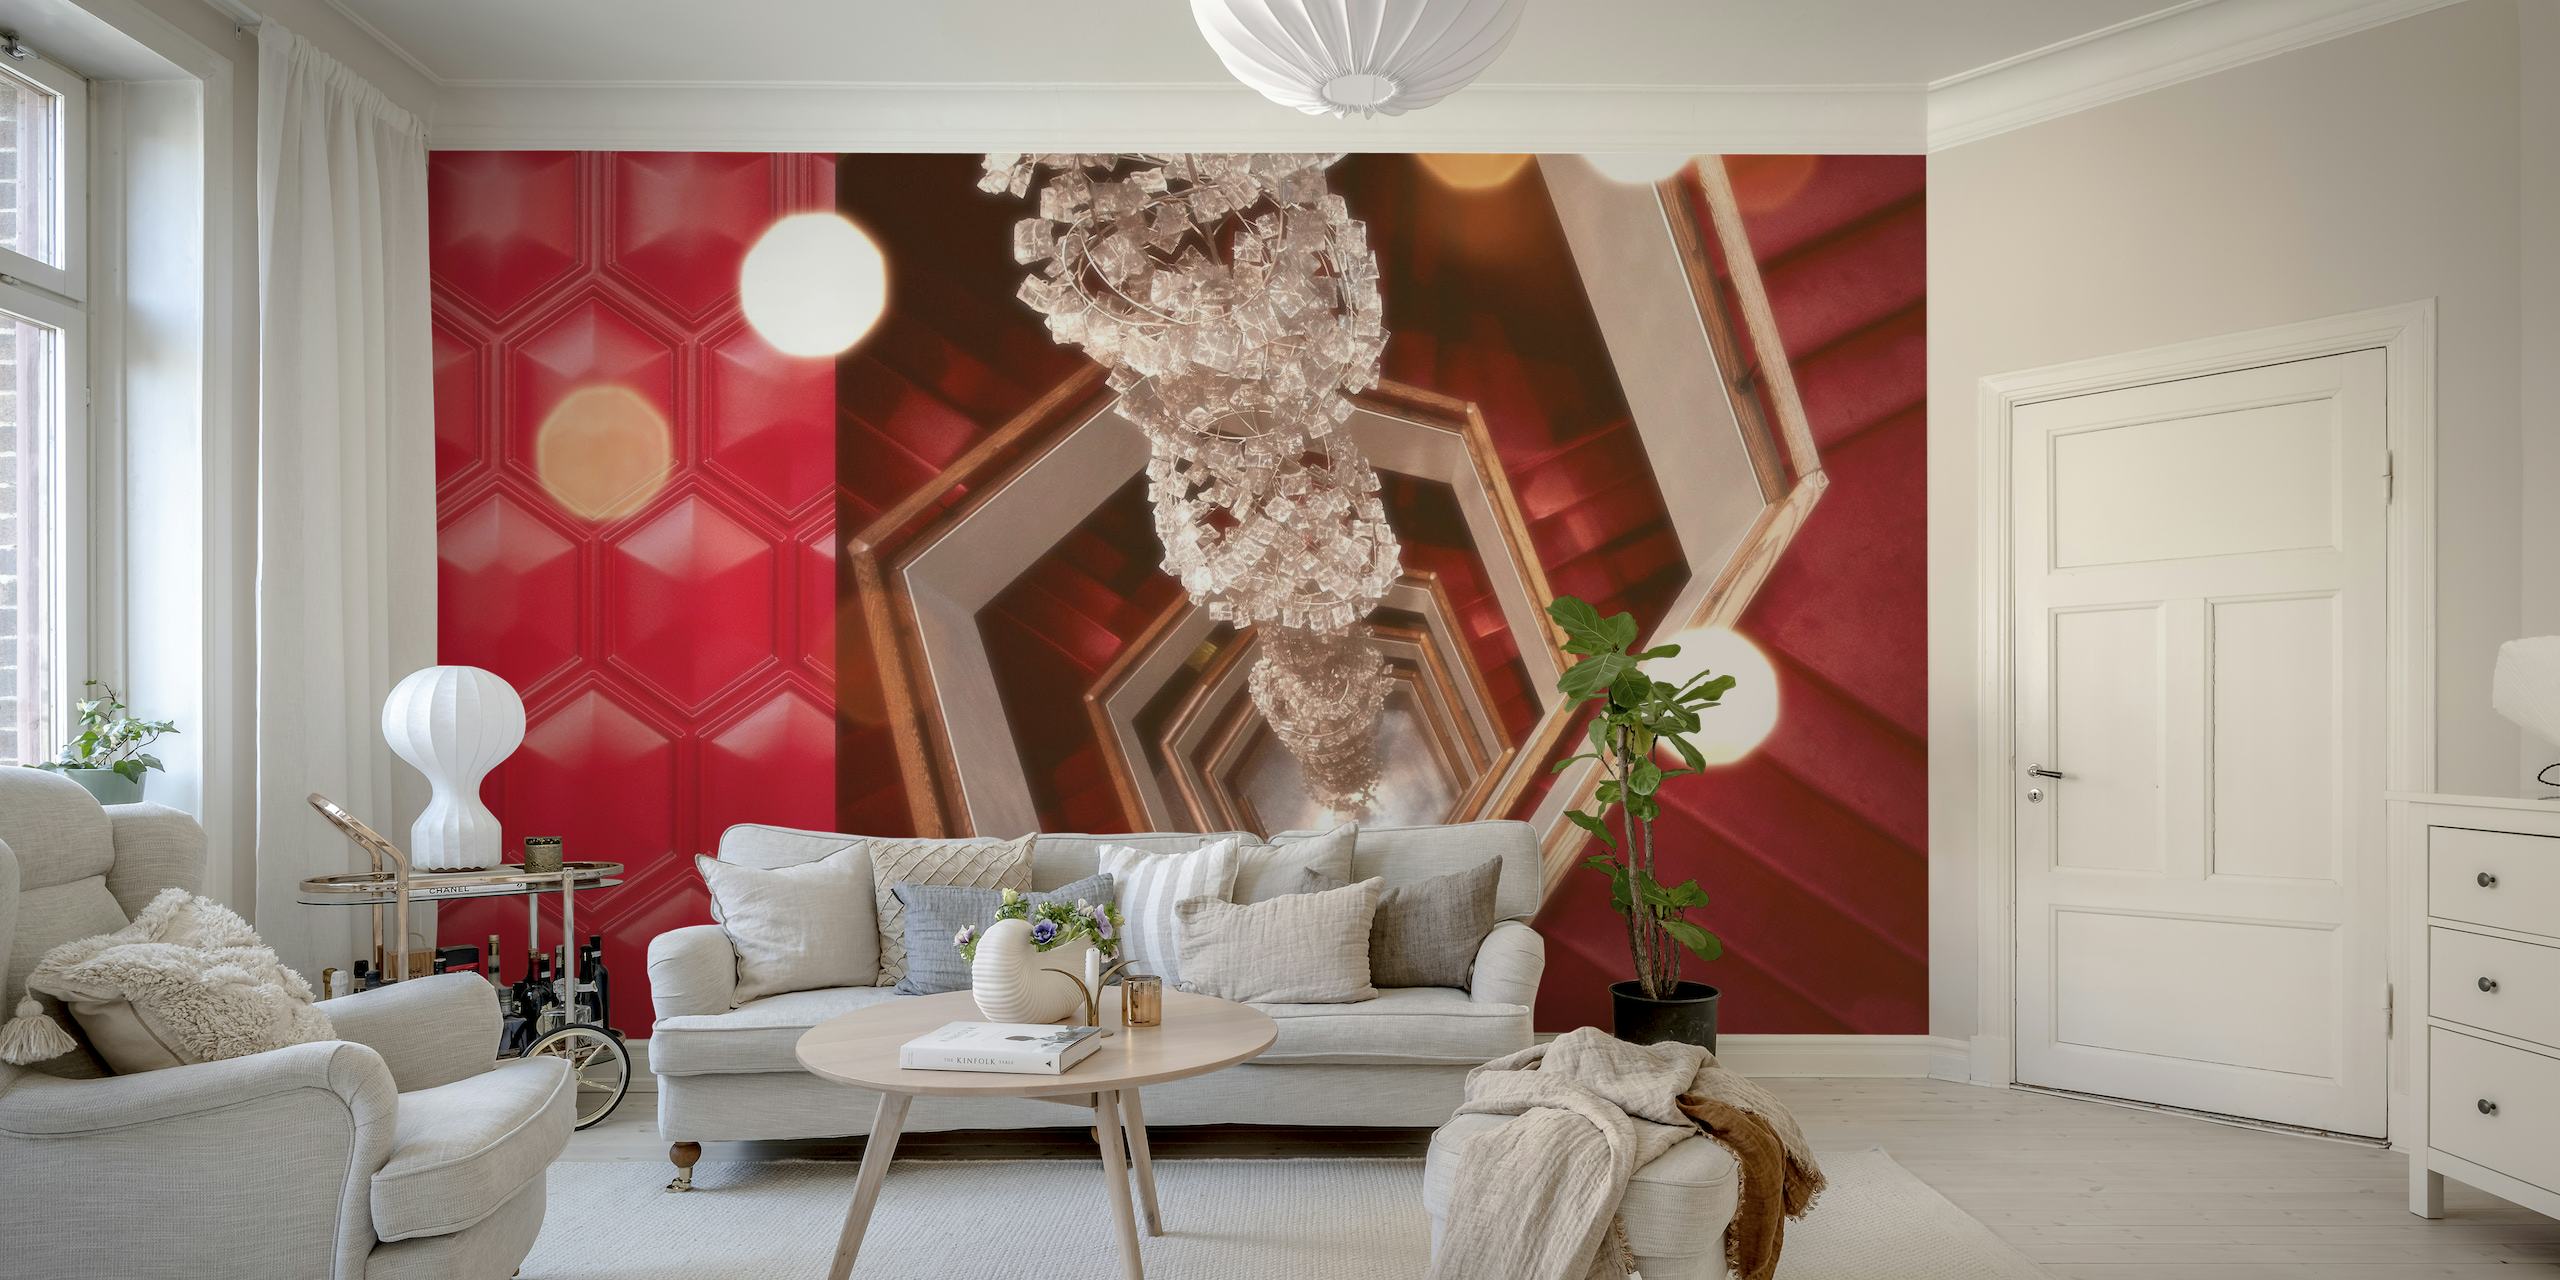 Lustre vintage e padrões geométricos em um mural de parede inspirado em cinema